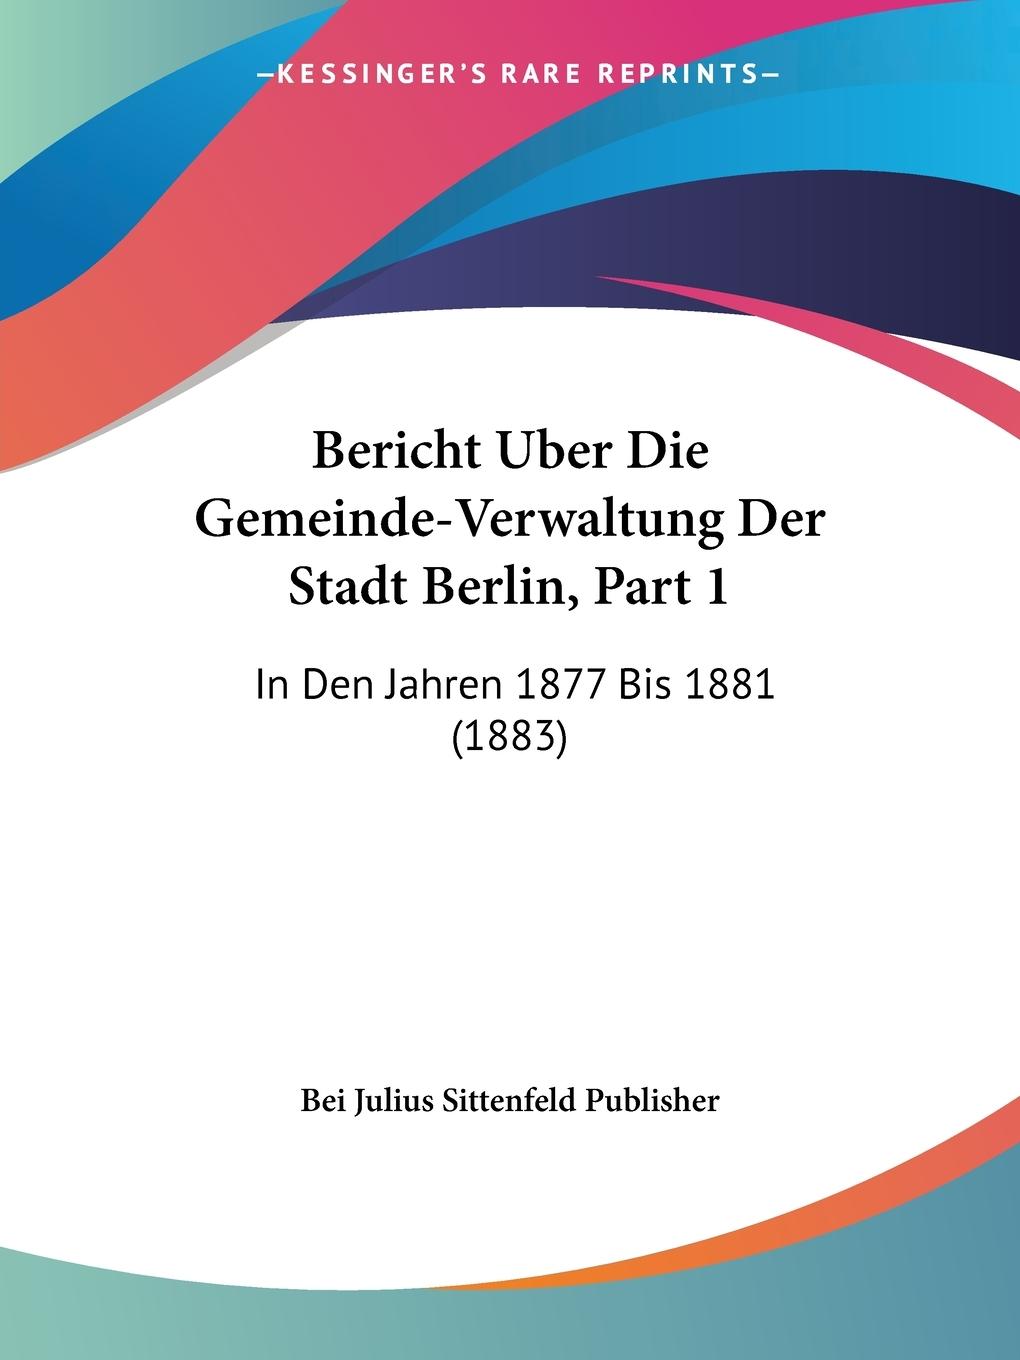 Bericht Uber Die Gemeinde-Verwaltung Der Stadt Berlin, Part 1 - Bei Julius Sittenfeld Publisher